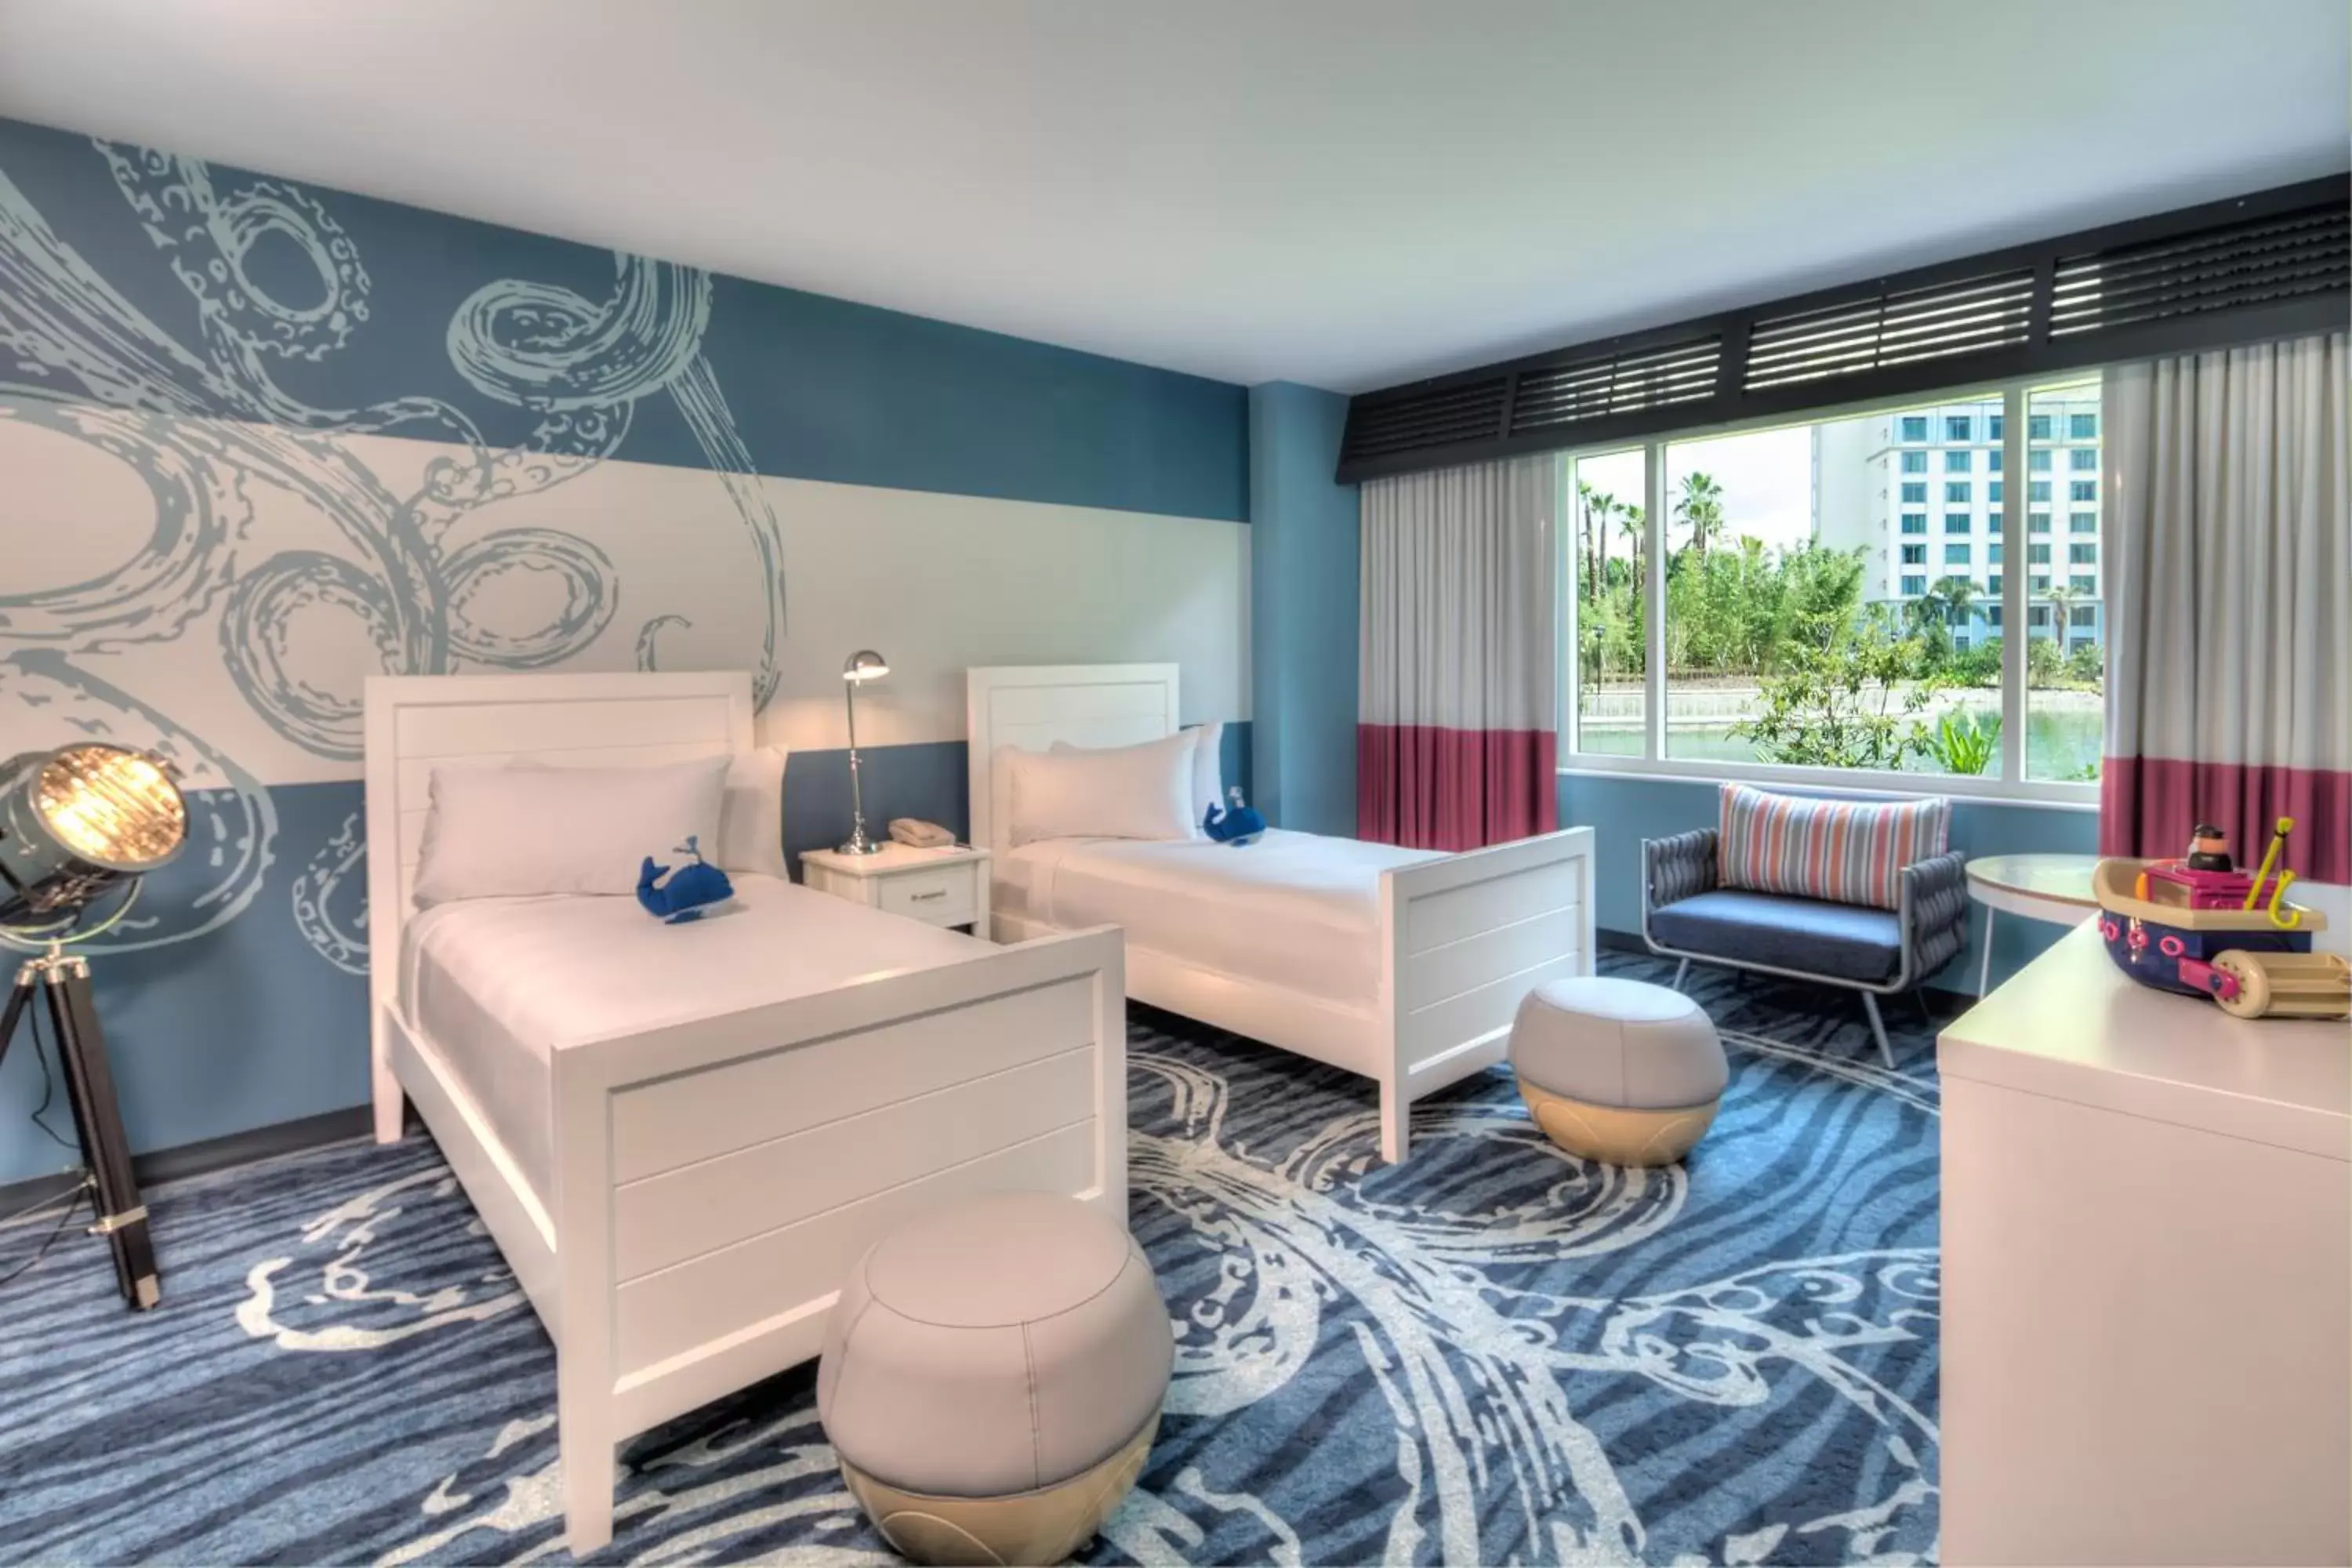 Bedroom in Universal's Loews Sapphire Falls Resort